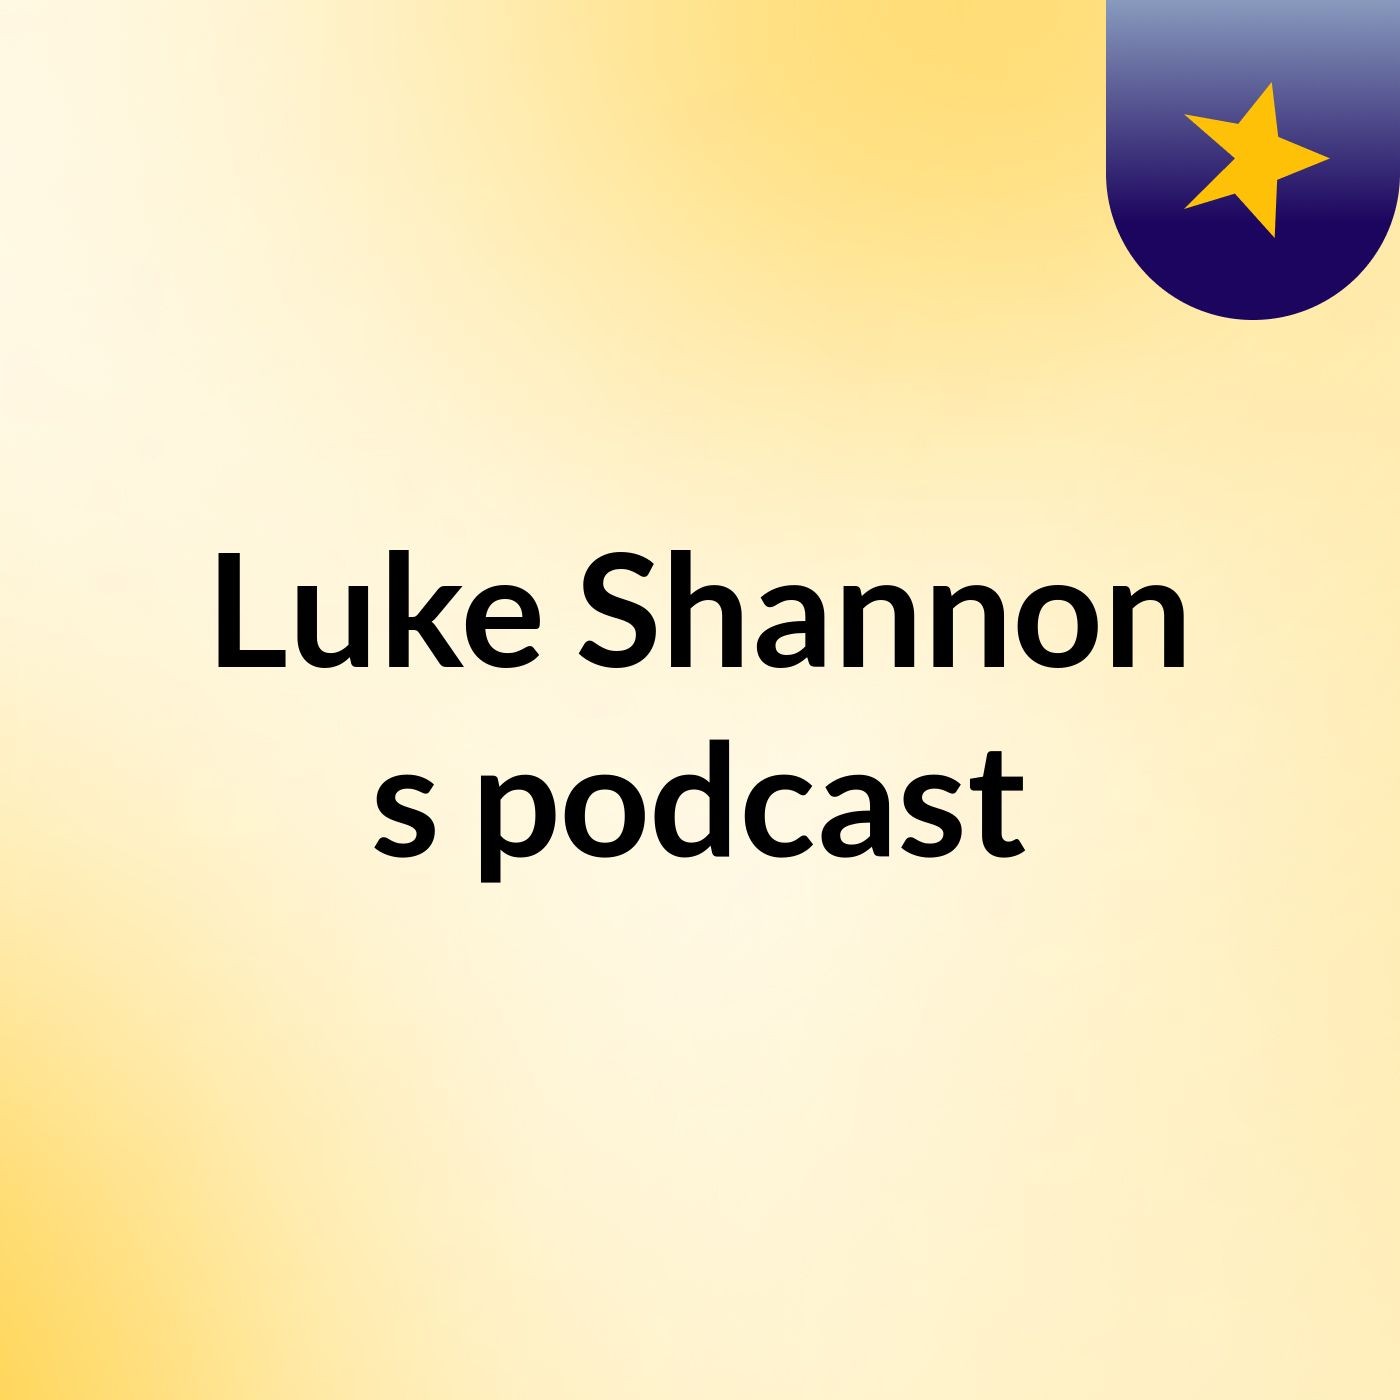 Luke Shannon's podcast